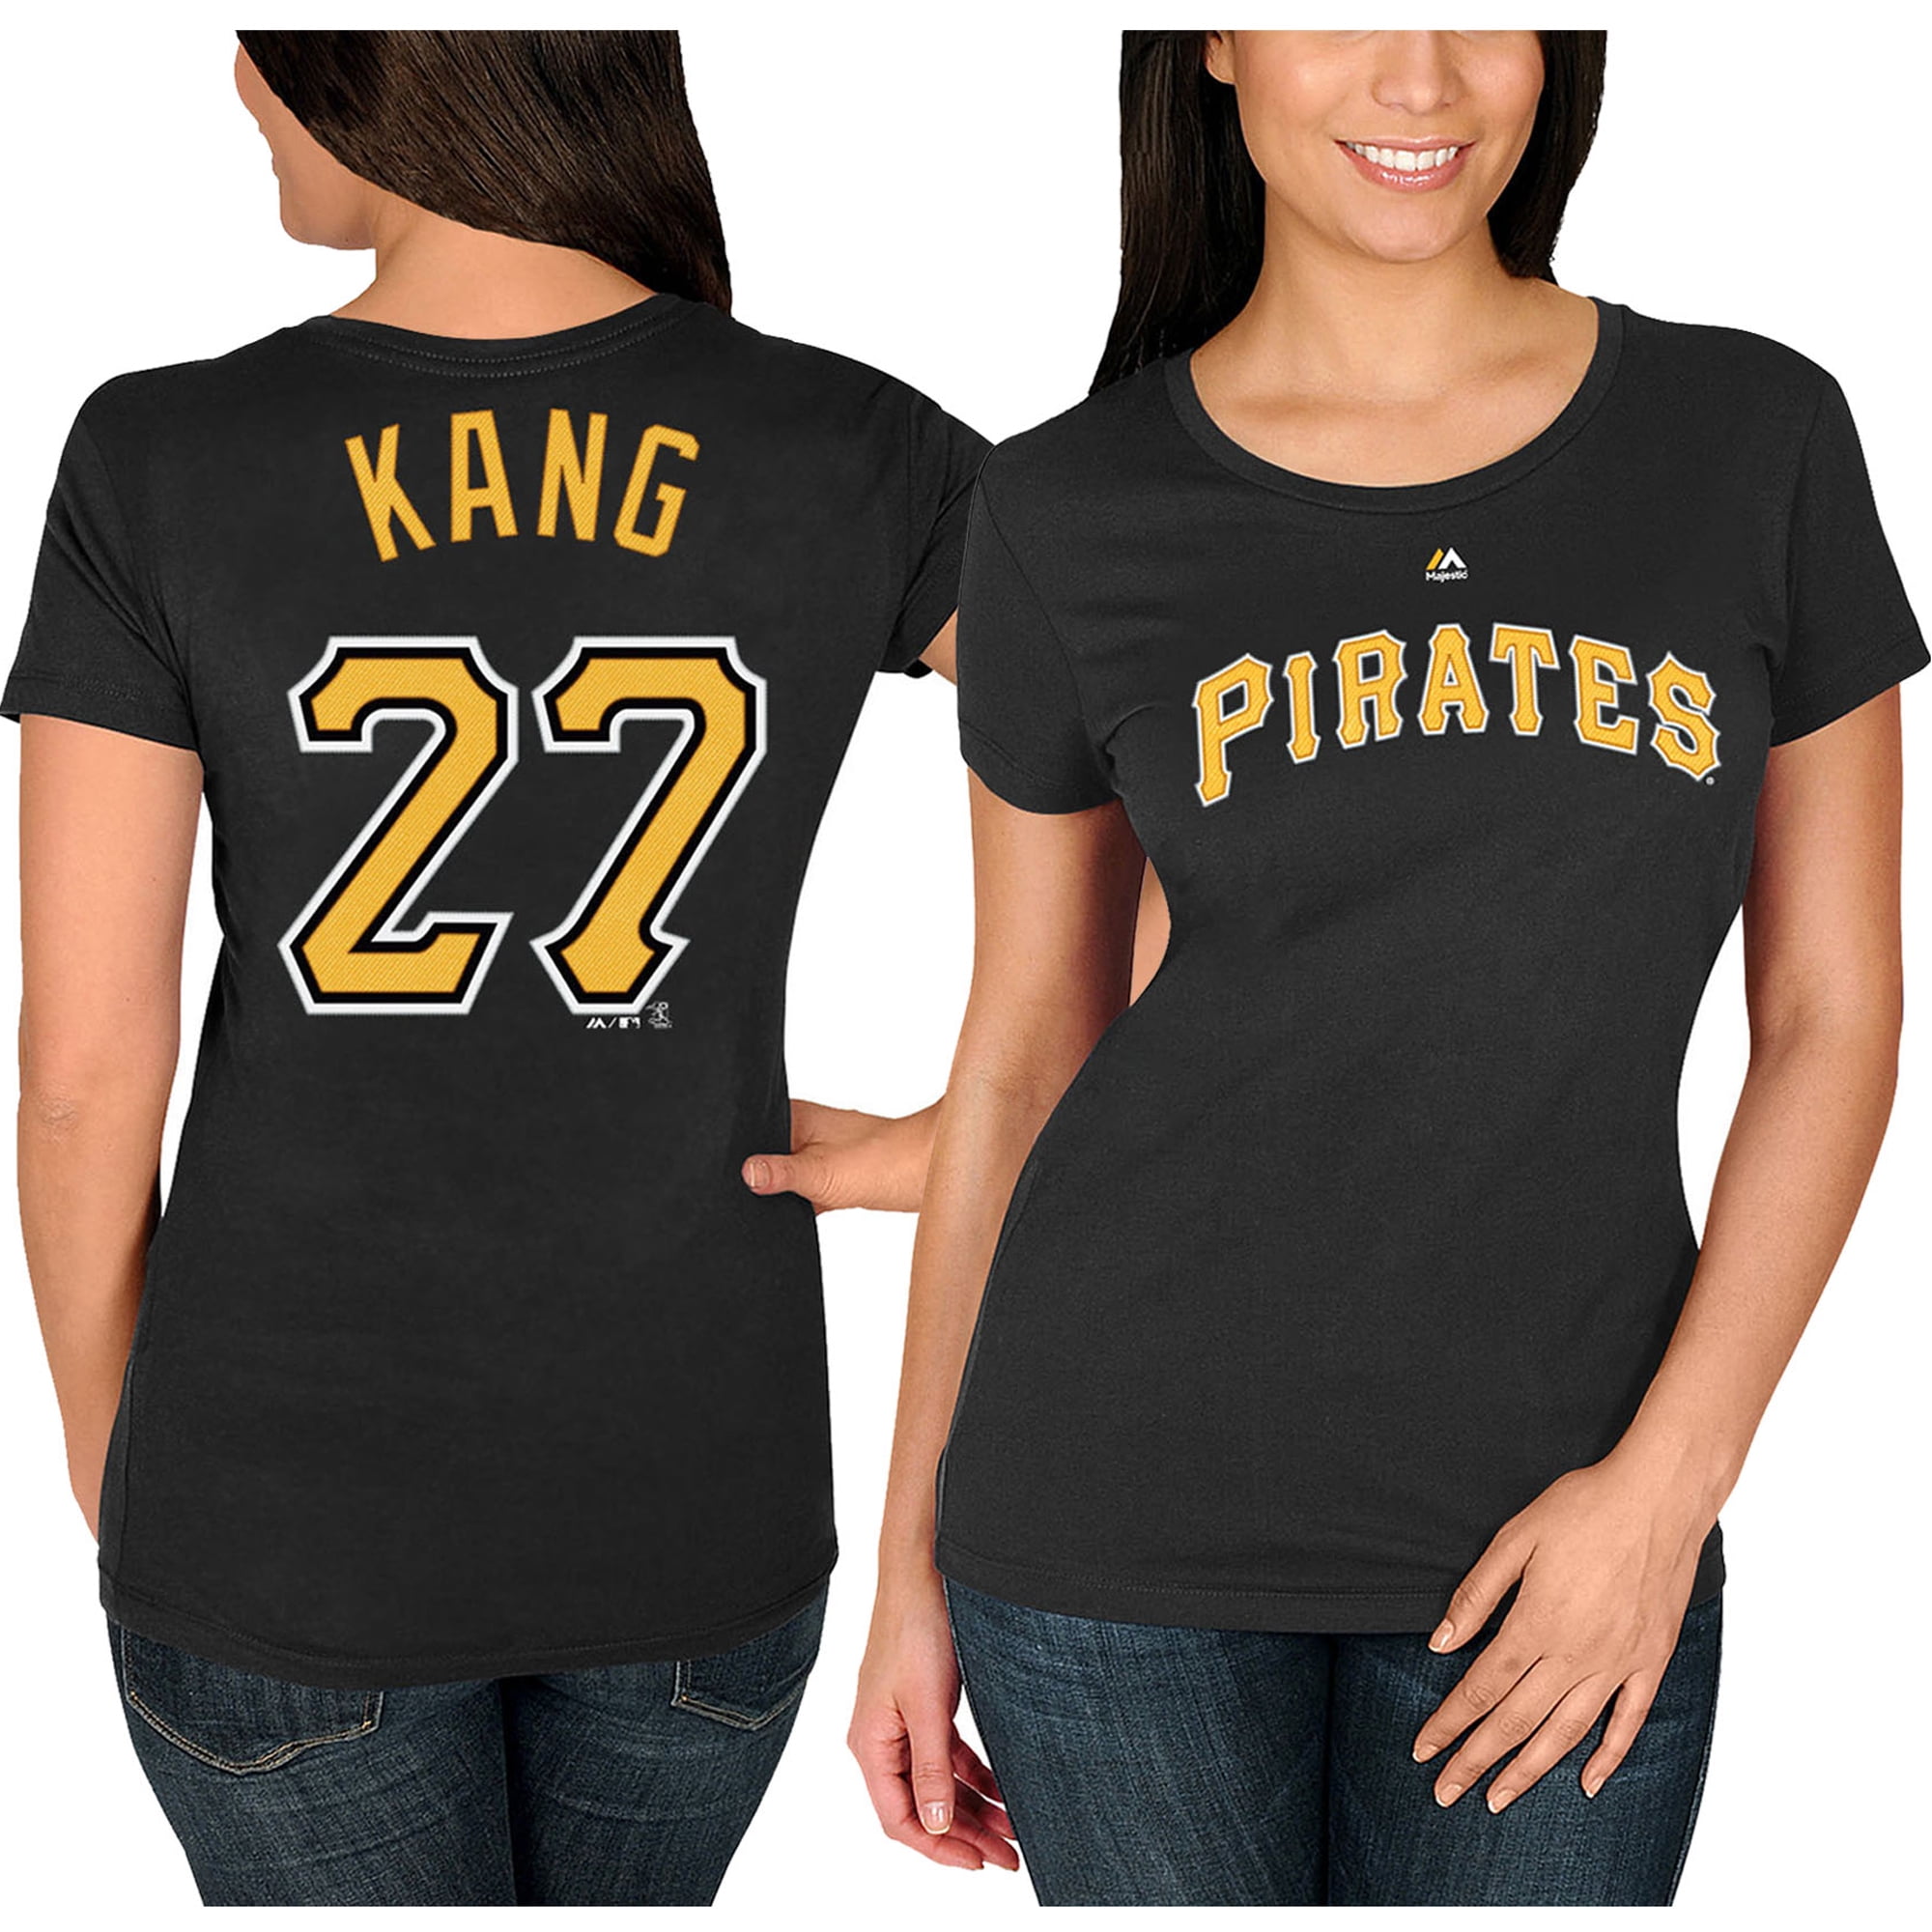 kang pirates shirt